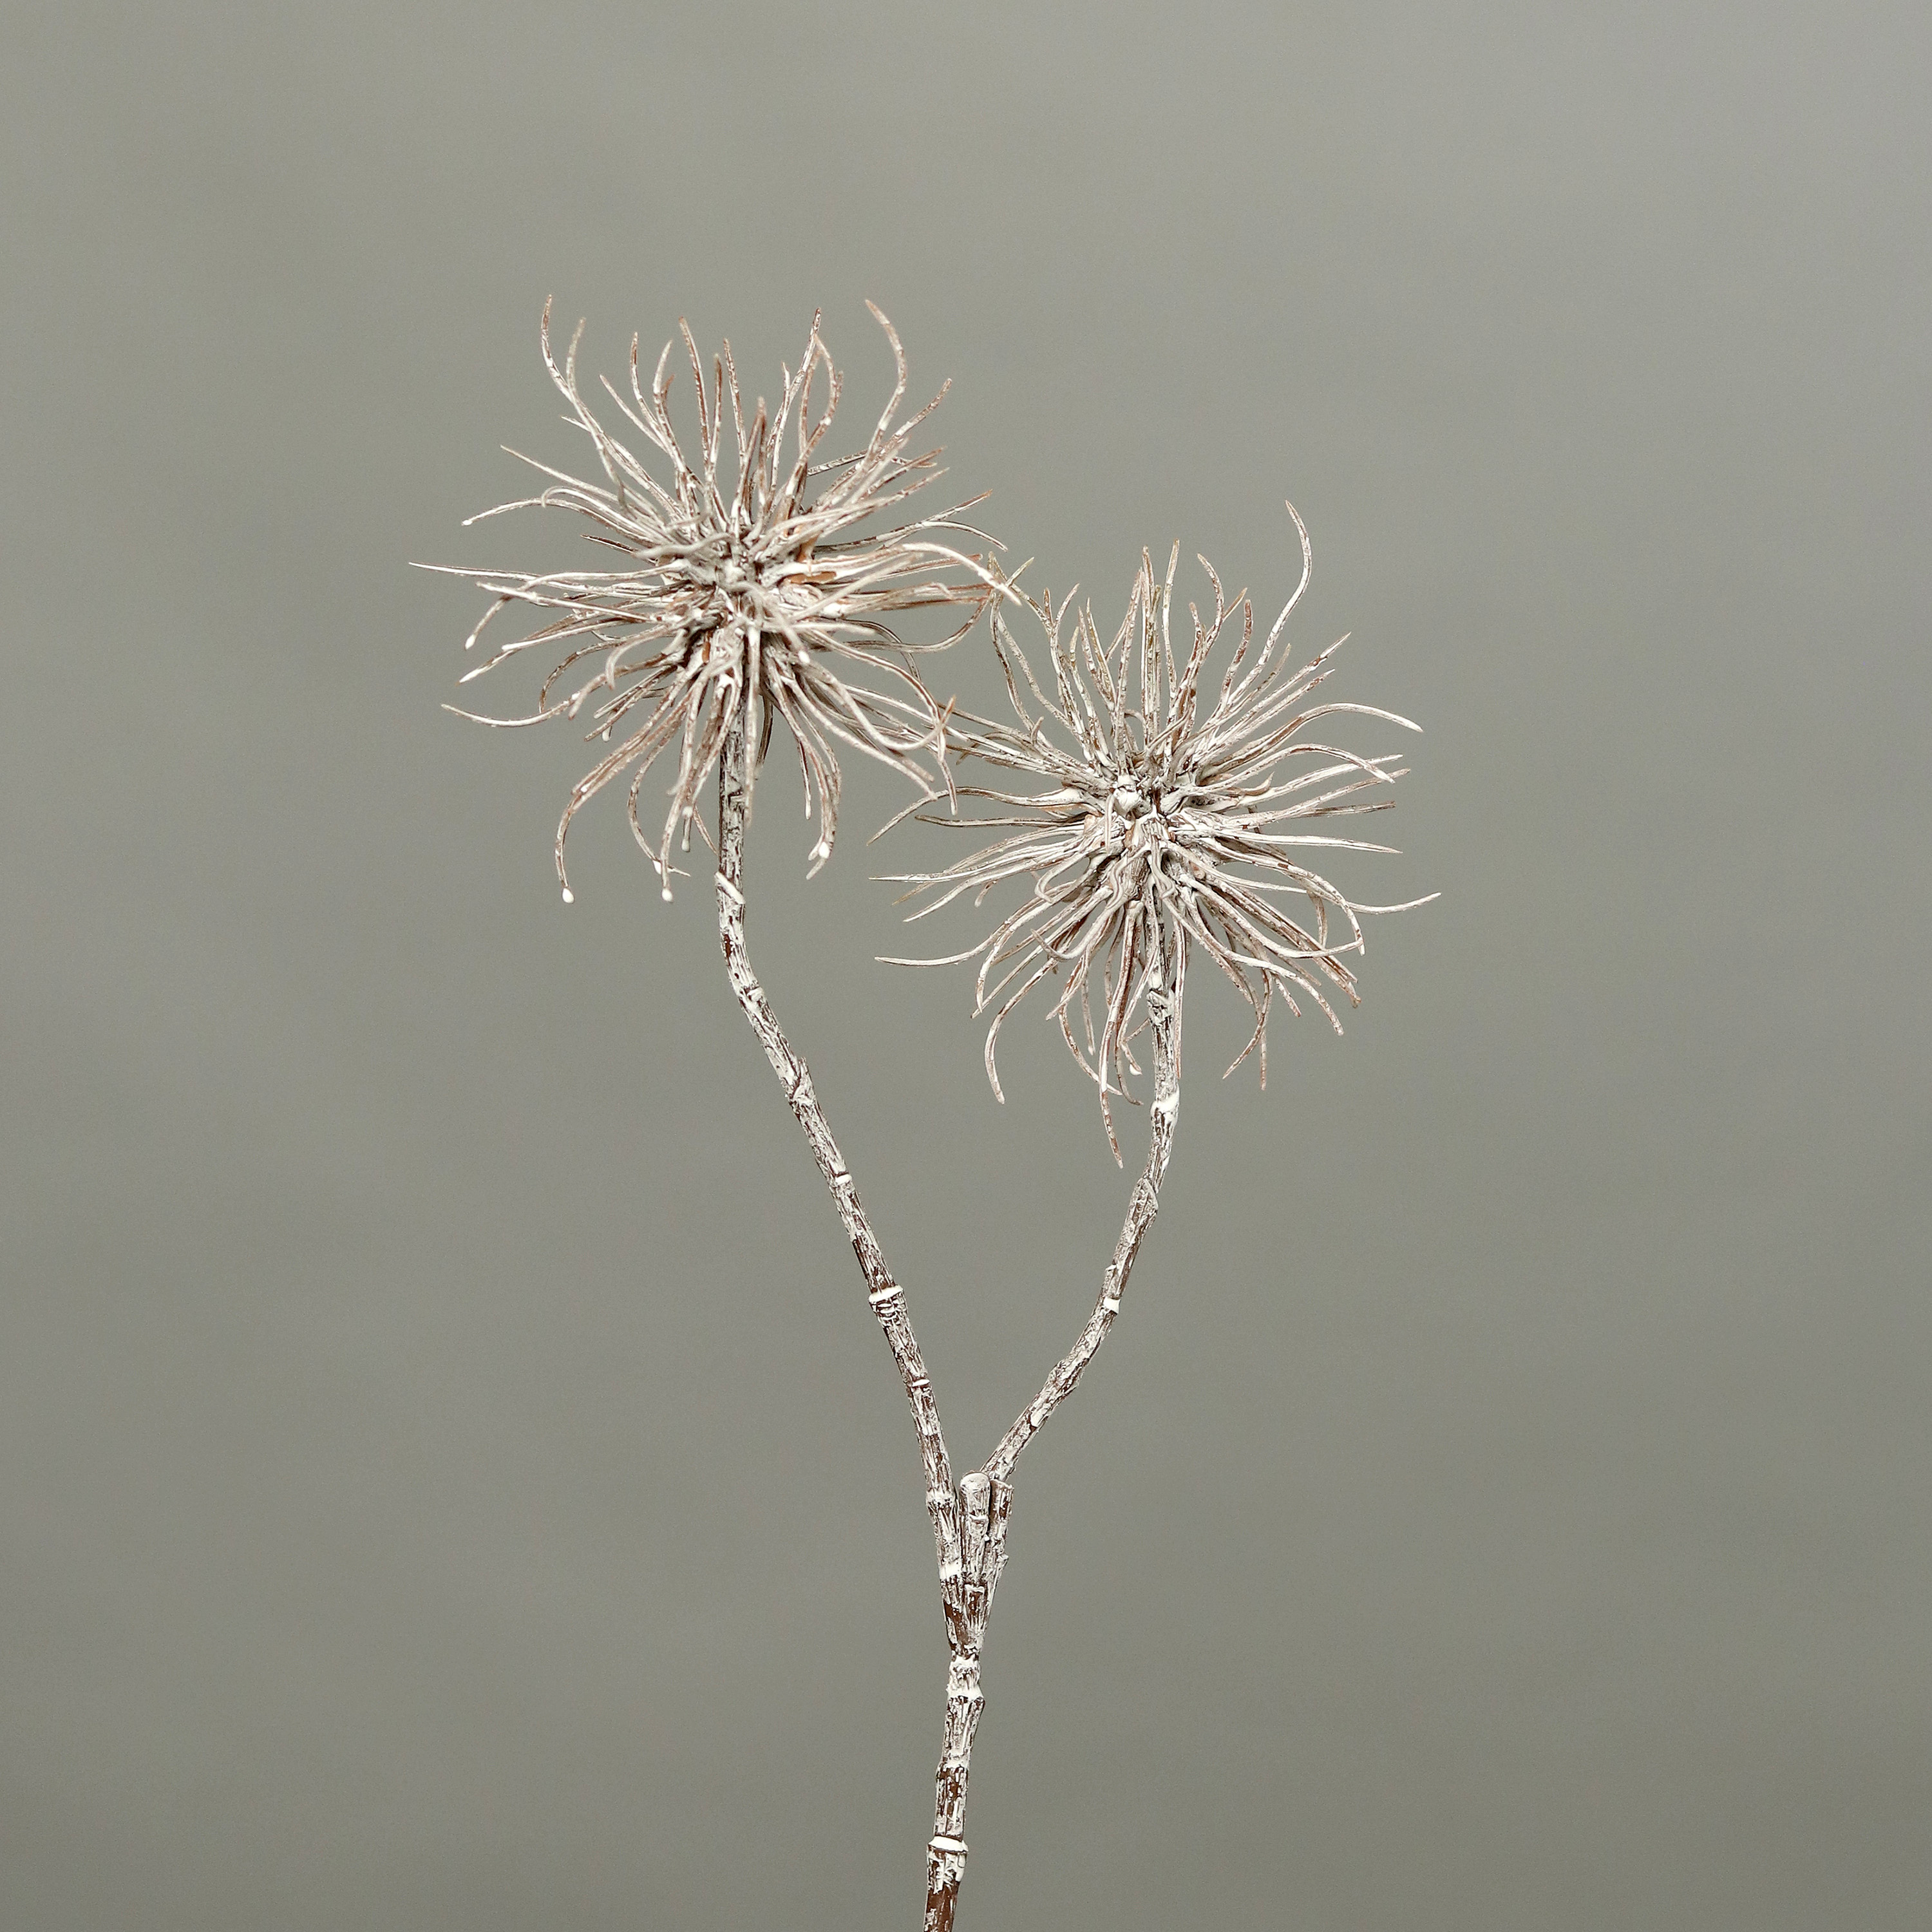 Zaubernusszweig / Hamameliszweig 45cm braun-weiß GA Kunstblumen Kunstzweig künstliche Blumen Hamamel